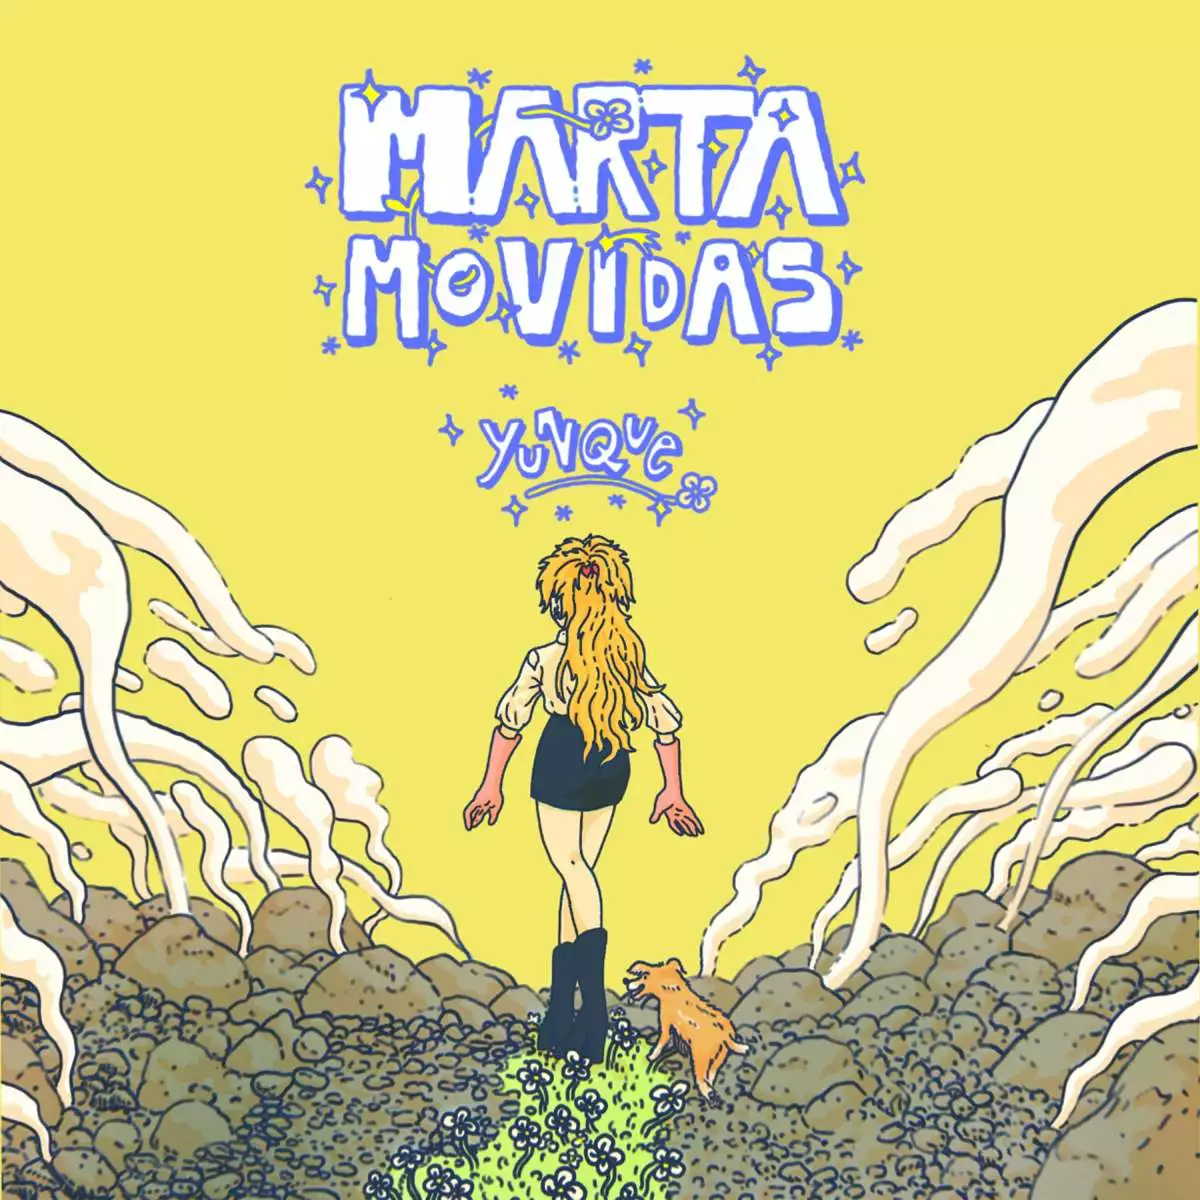 Marta Movidas "Yunque" 7" Coloreado + Fanzine